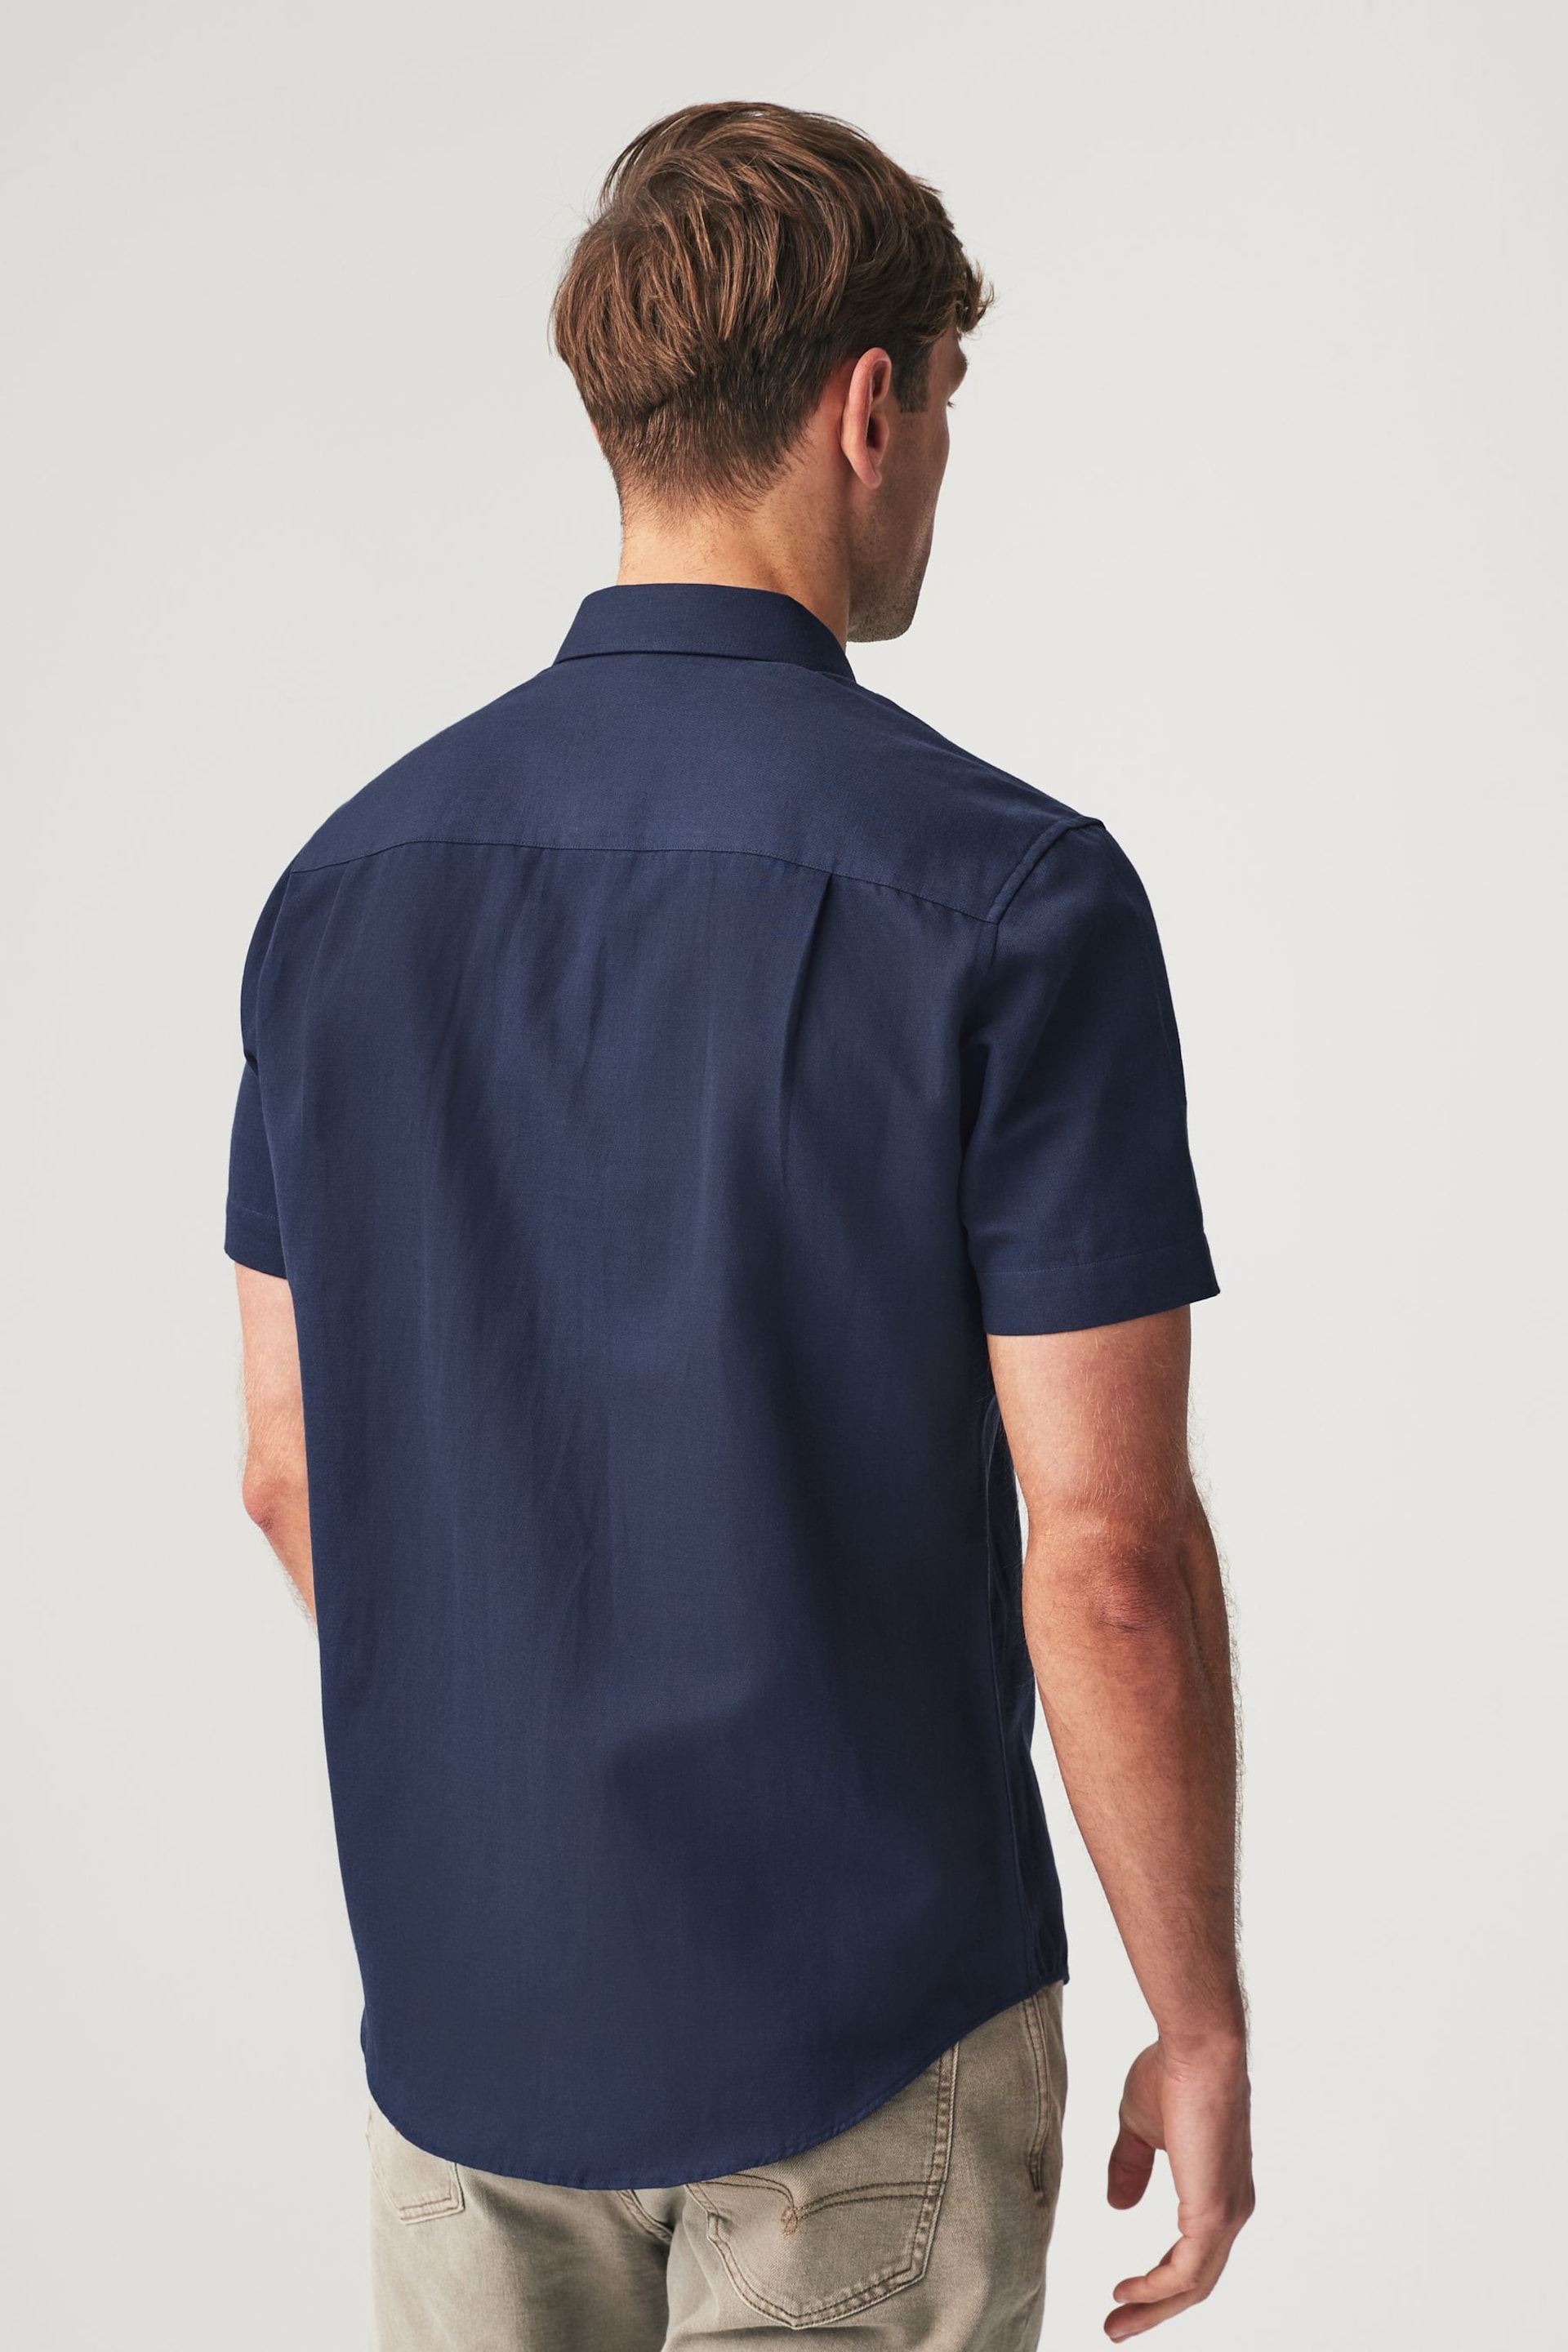 Navy Blue Linen Blend Shirt - Image 3 of 7